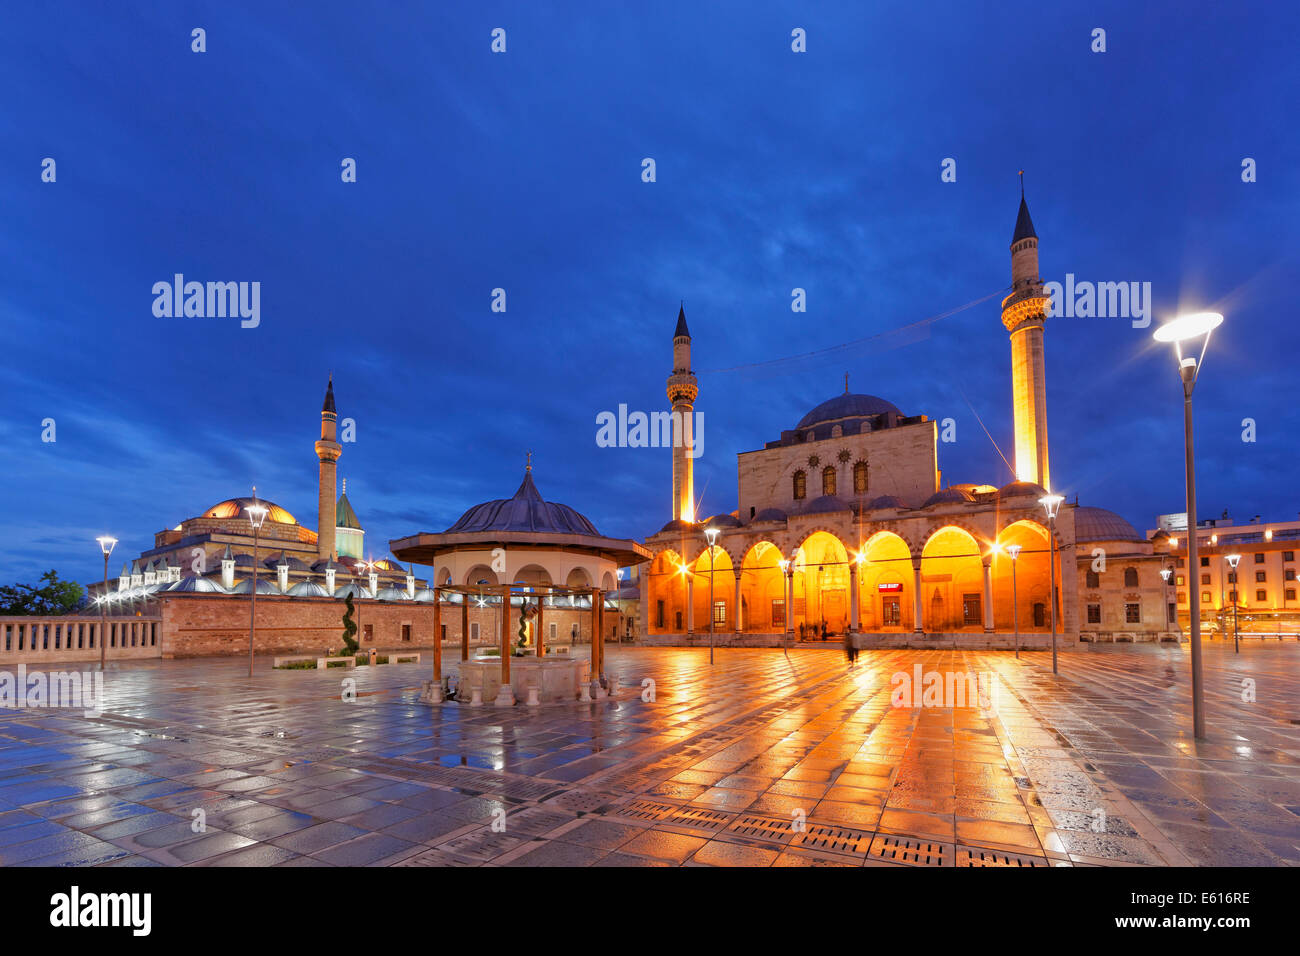 Monastère de Mevlana Rumi avec son mausolée et mosquée Selimiye, Konya, Anatolie centrale, Anatolie, Turquie Banque D'Images